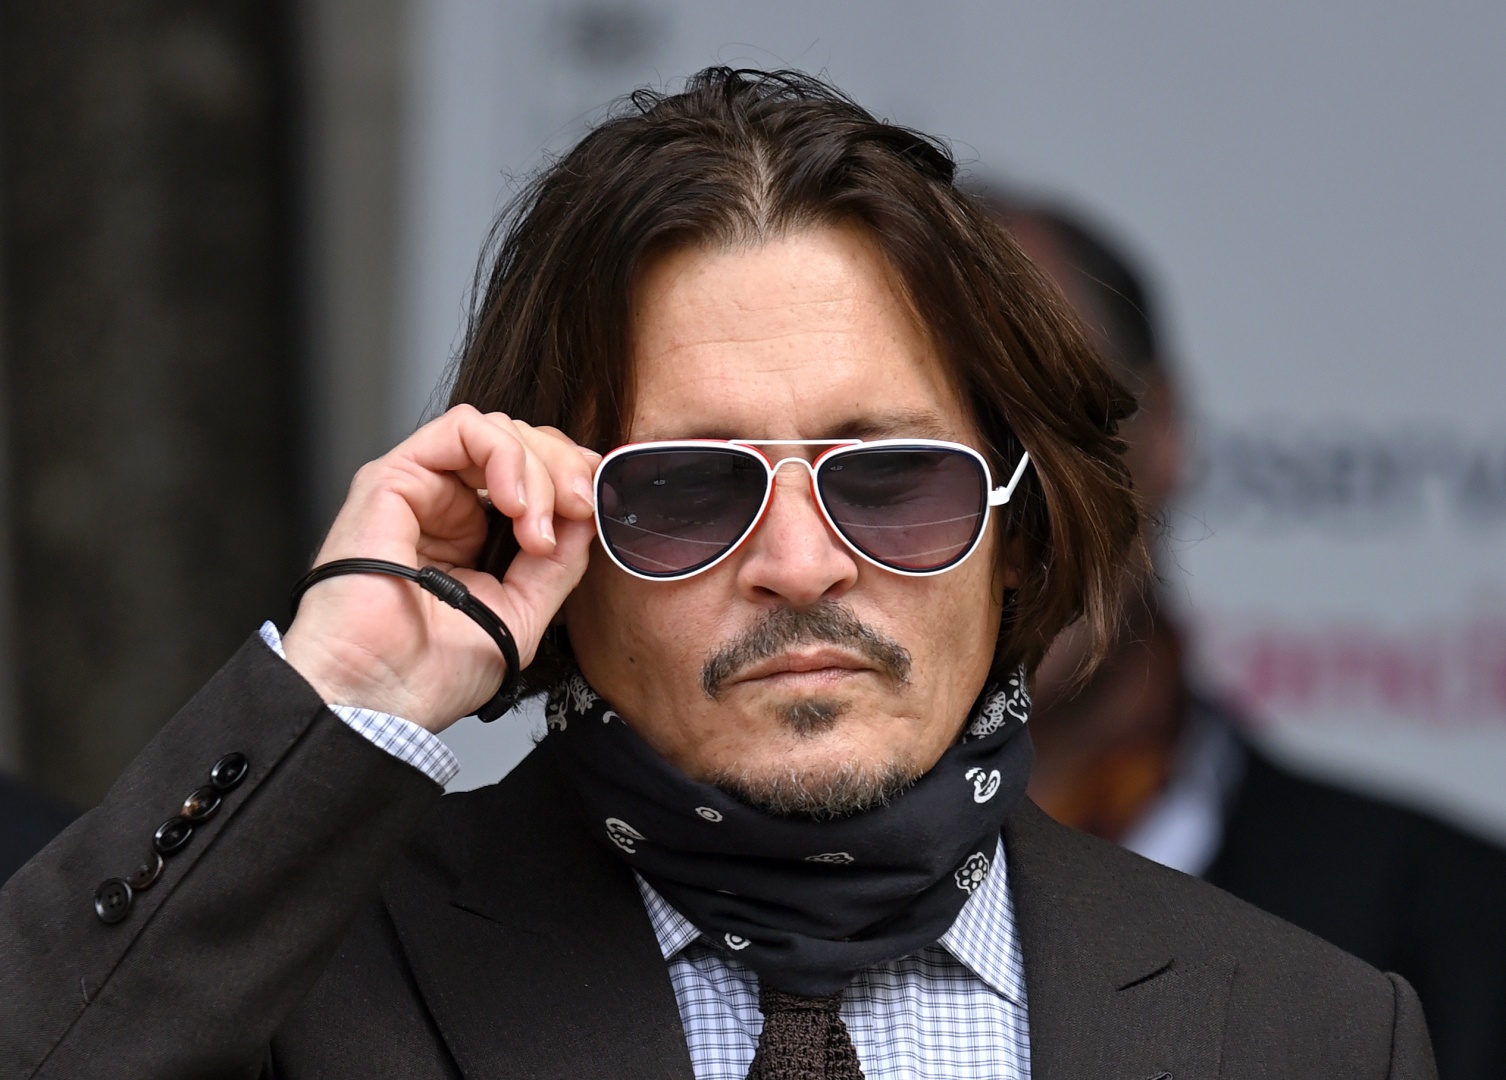 Visão  Johnny Depp perde caso de difamação contra The Sun. A expressão  “Espancador de mulheres” não é calúnia, segundo o juiz